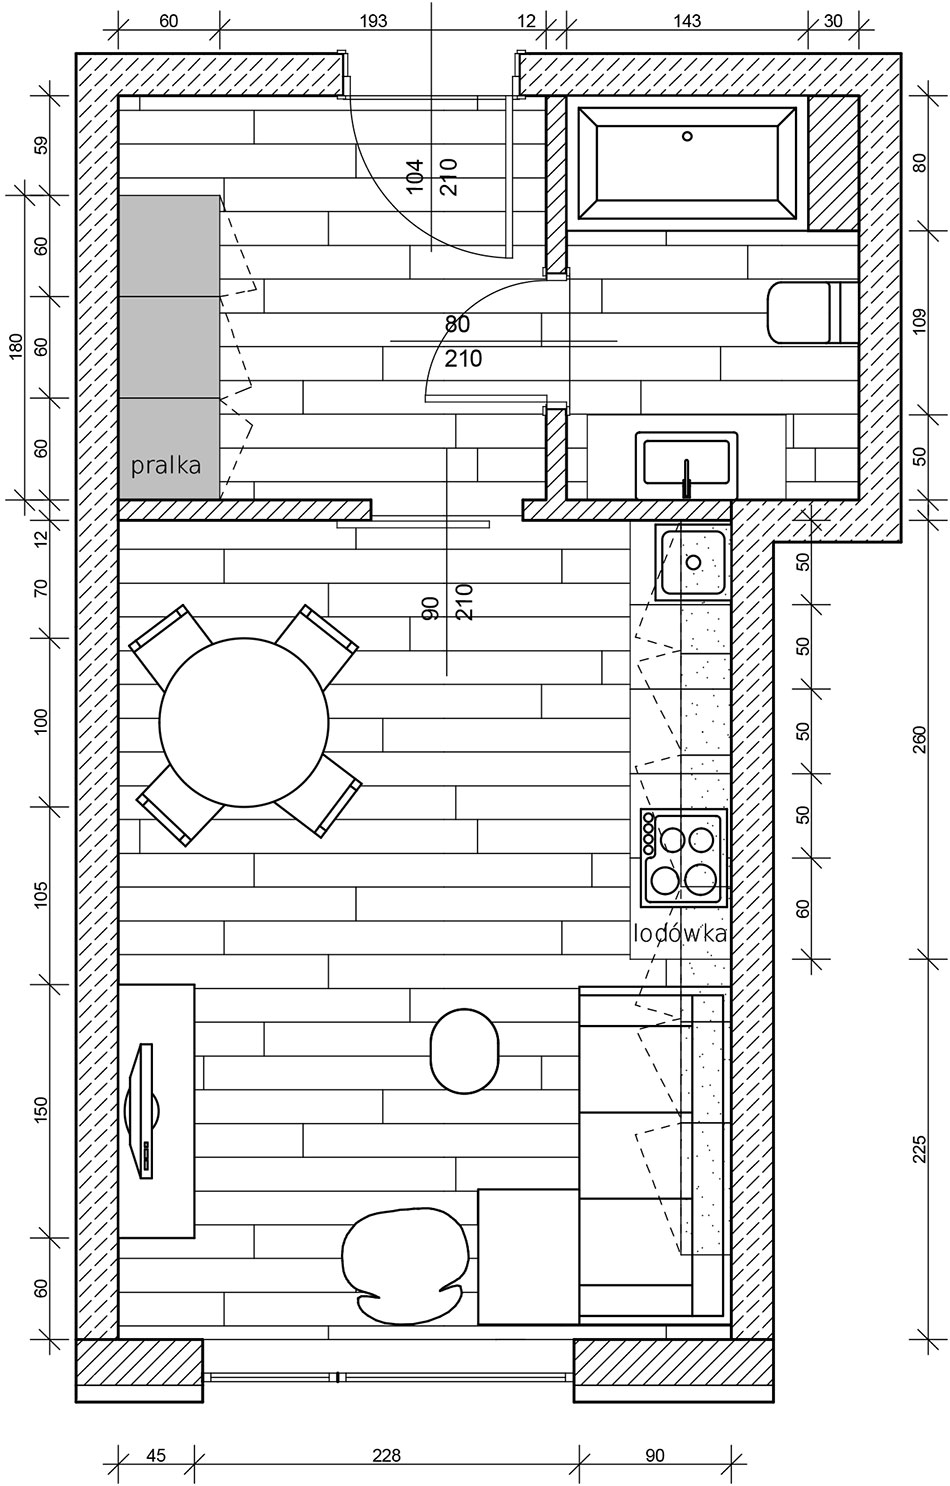 Plan mieszkania w stylu loft